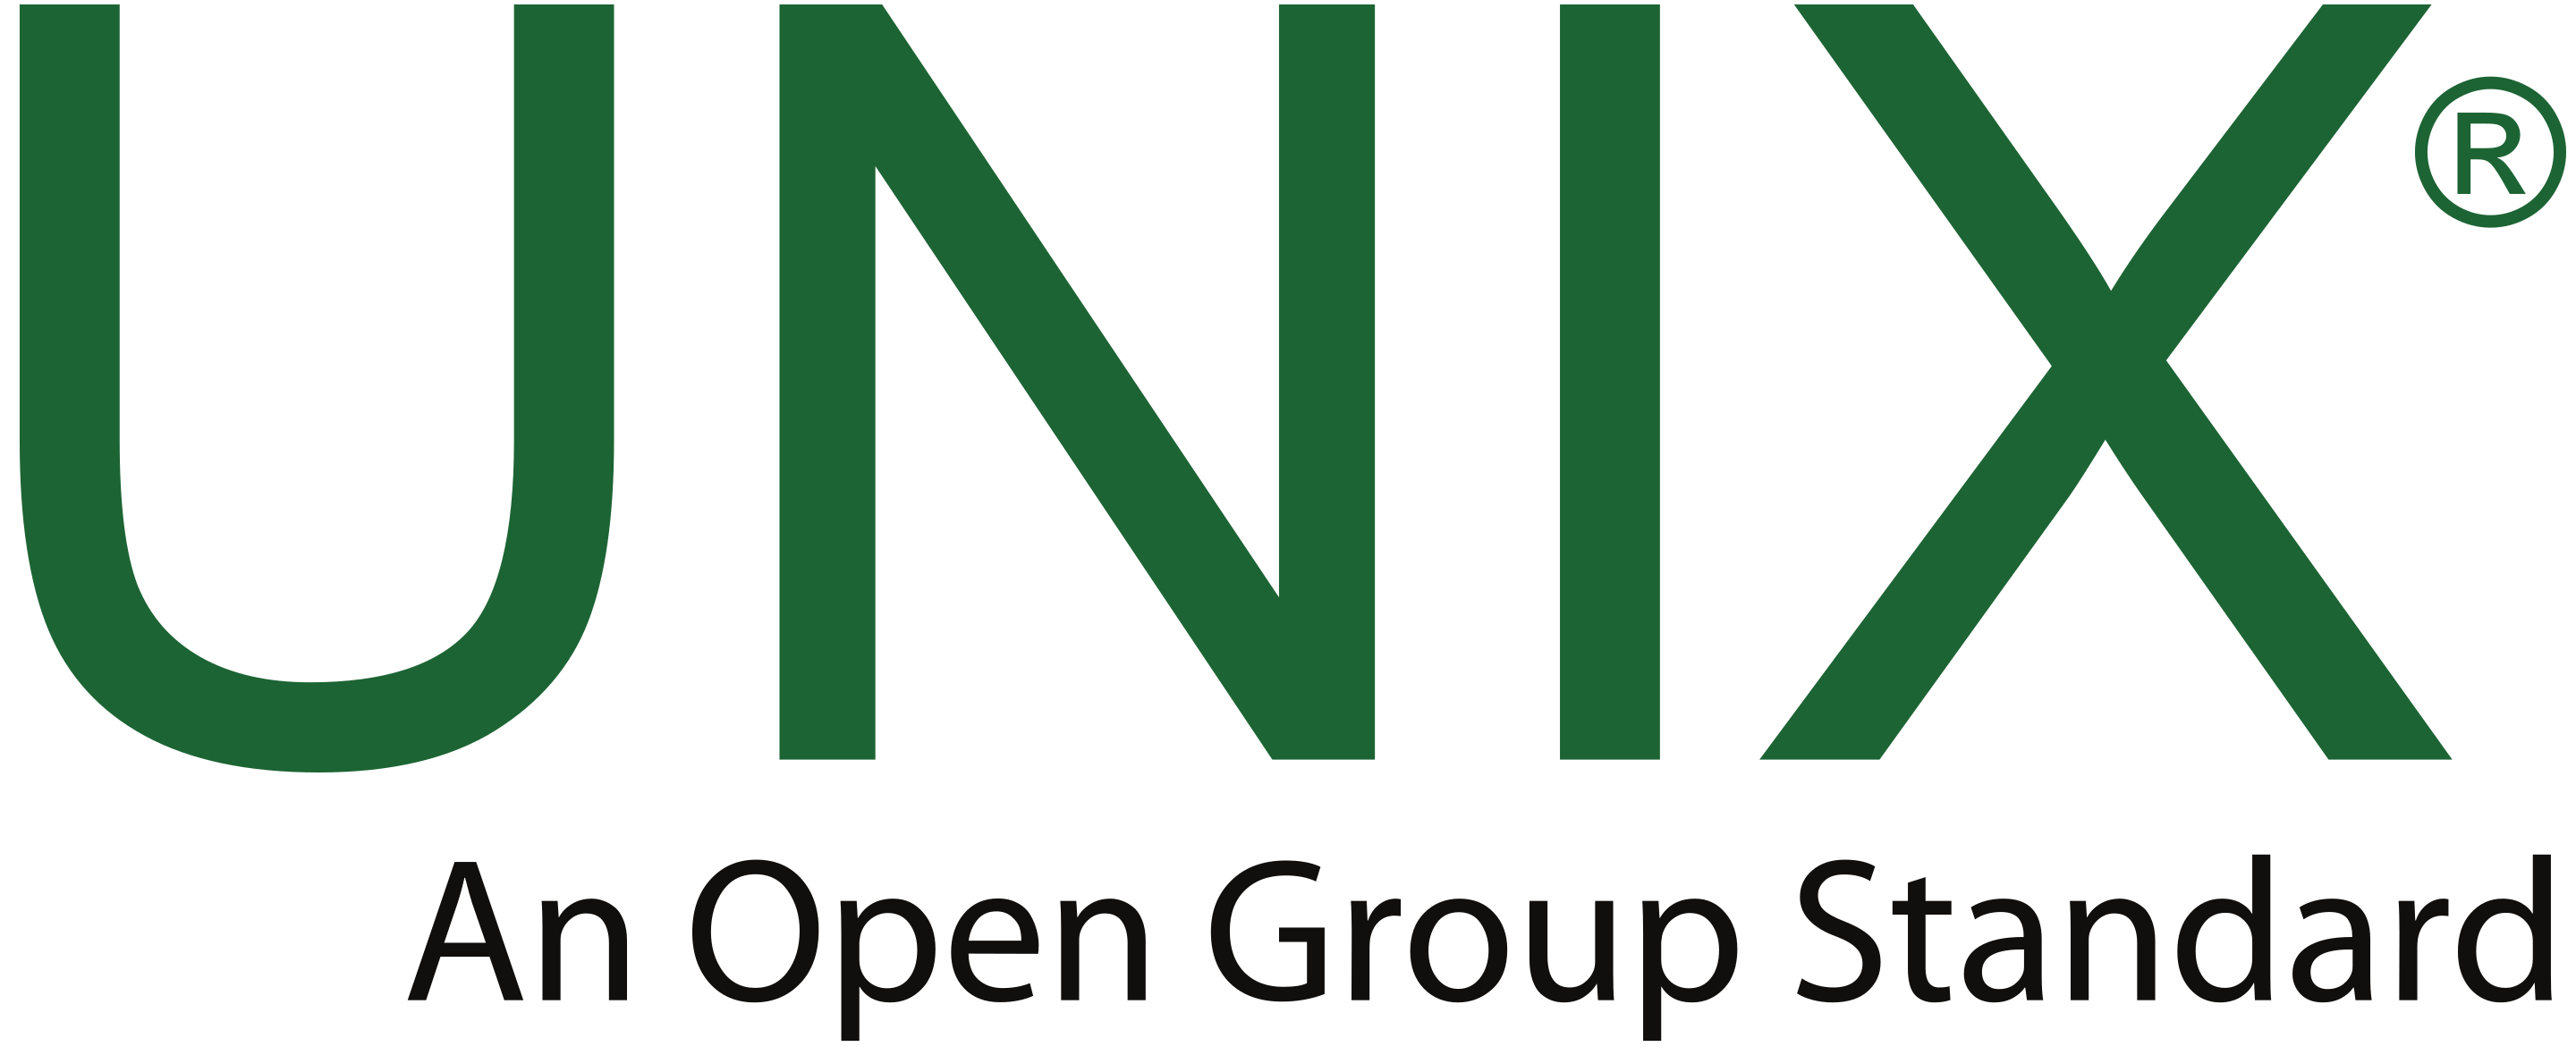 UNIX - Семейство переносимых, многозадачных и многопользовательских операционных систем